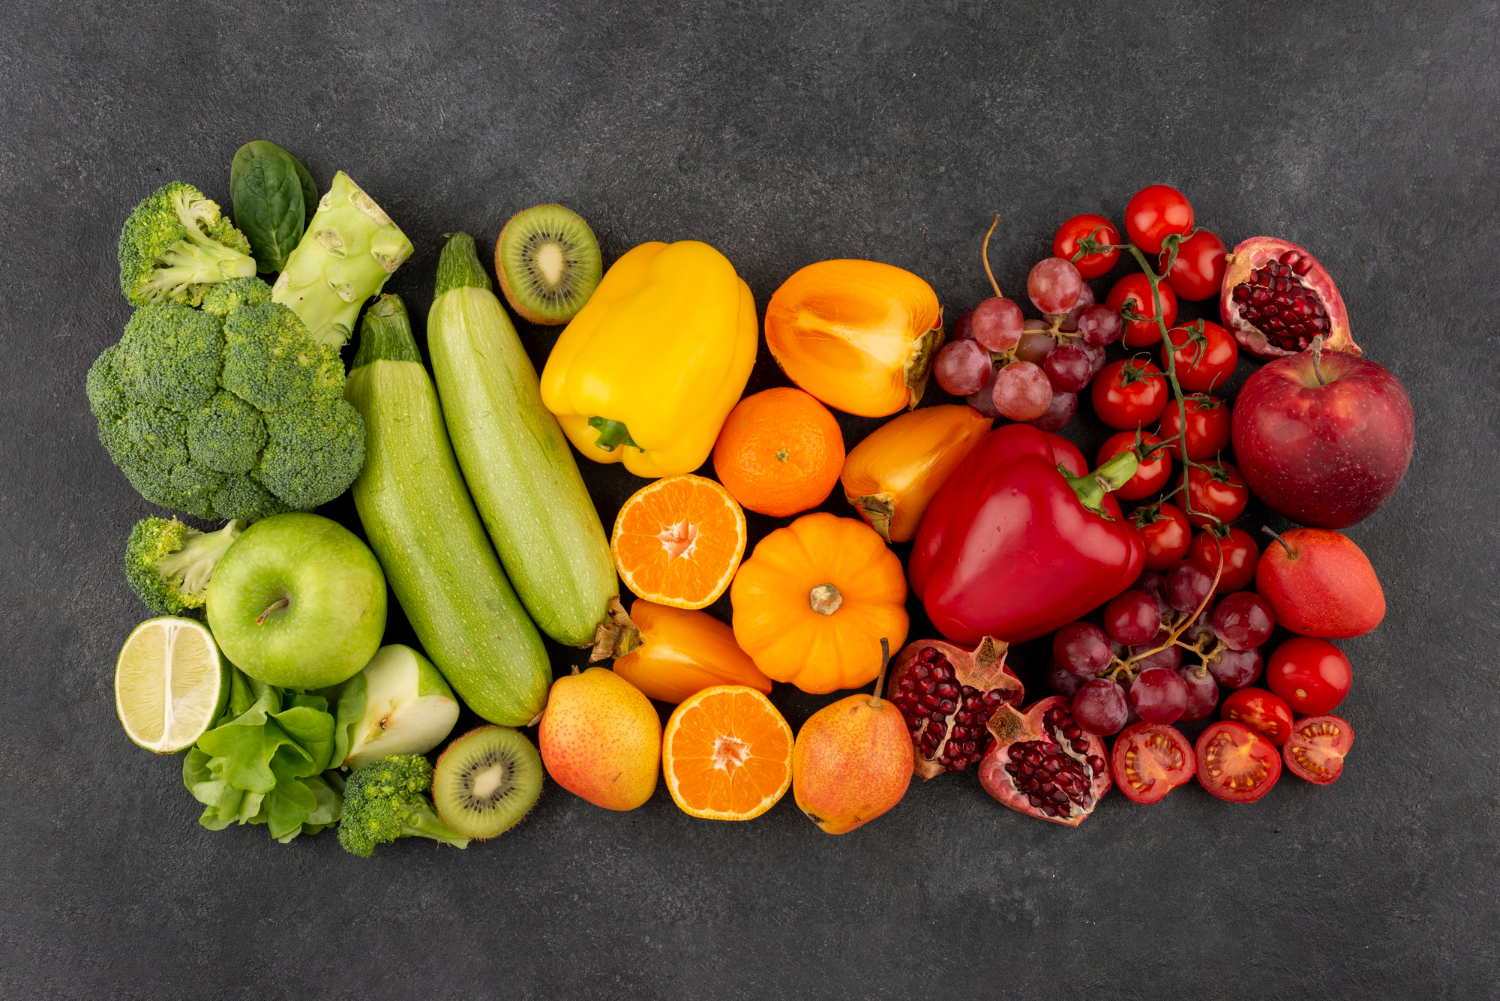 Укрепить иммунитет легко, если есть много фруктов и овощей. Фото © Freepik